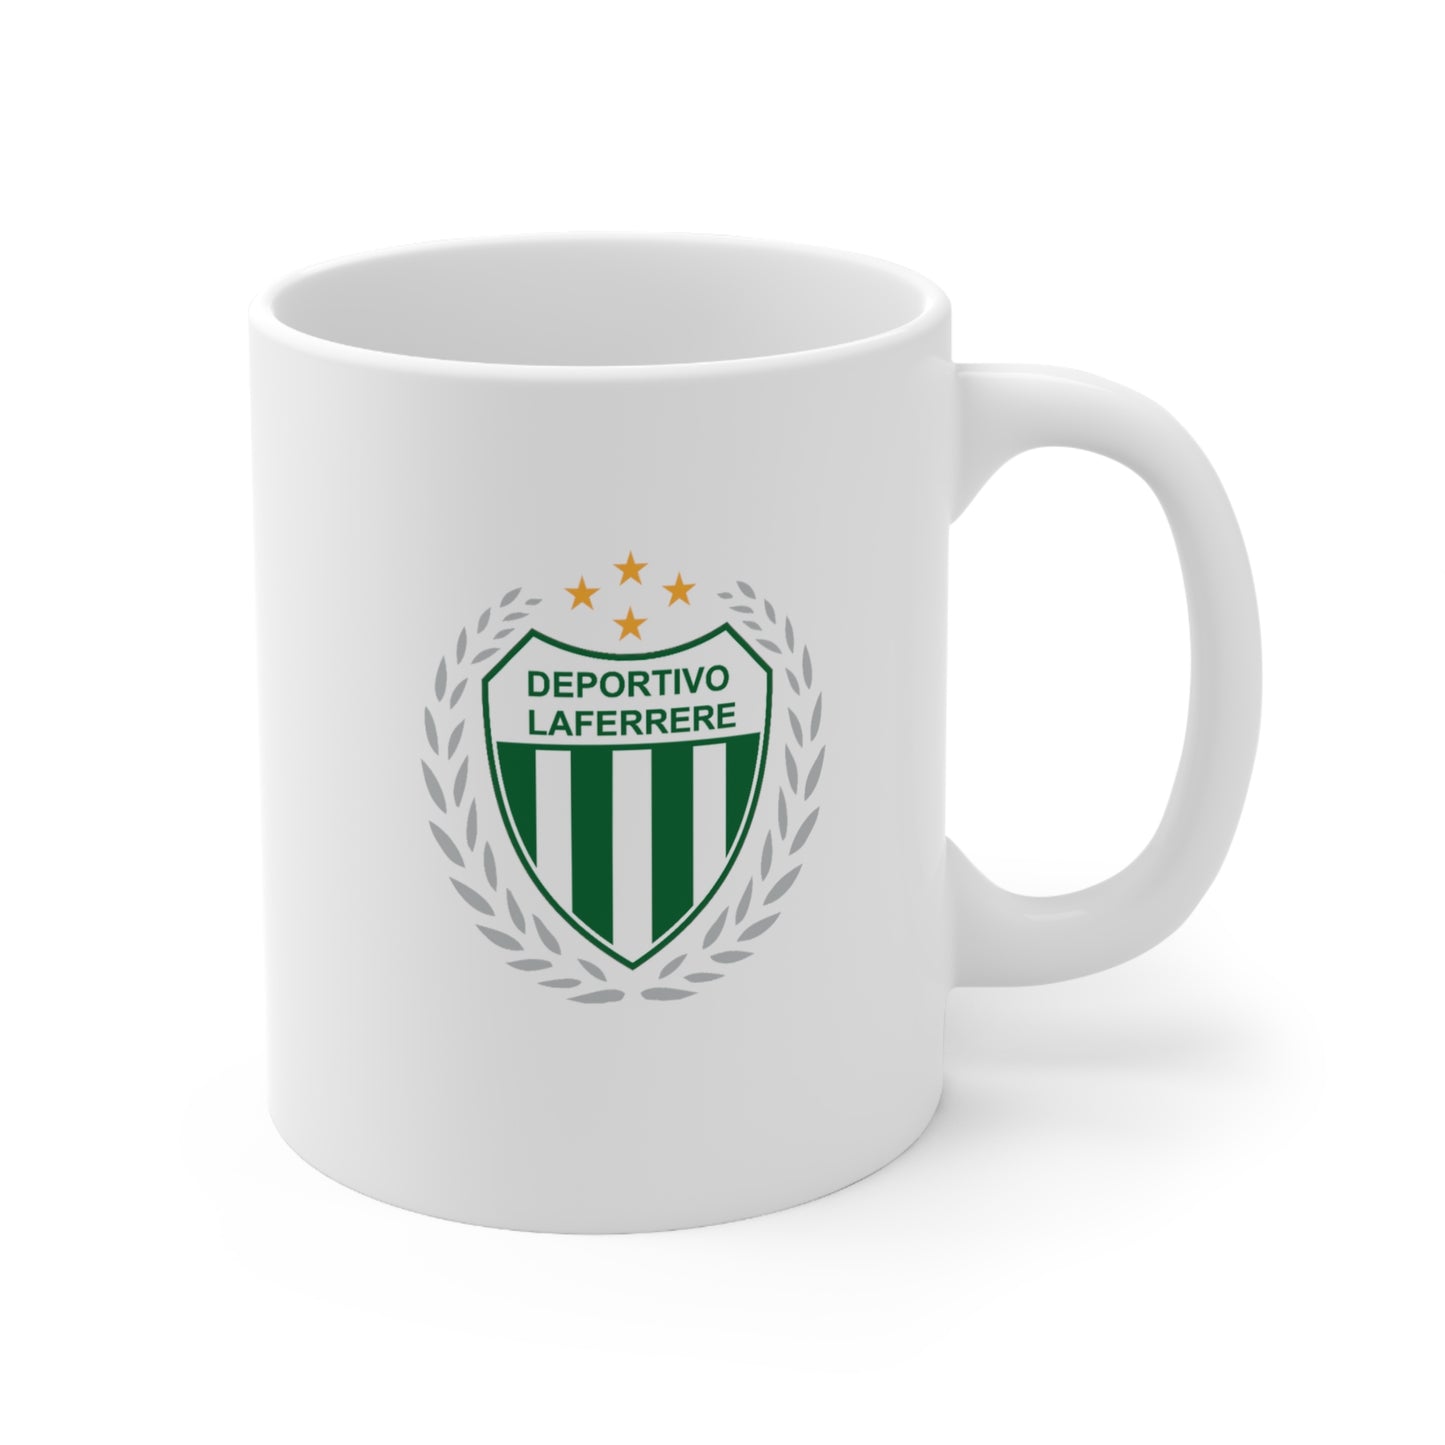 Club Social y Cultural Deportivo Laferrere de Laferrere Buenos Aires 2019 Ceramic Mug